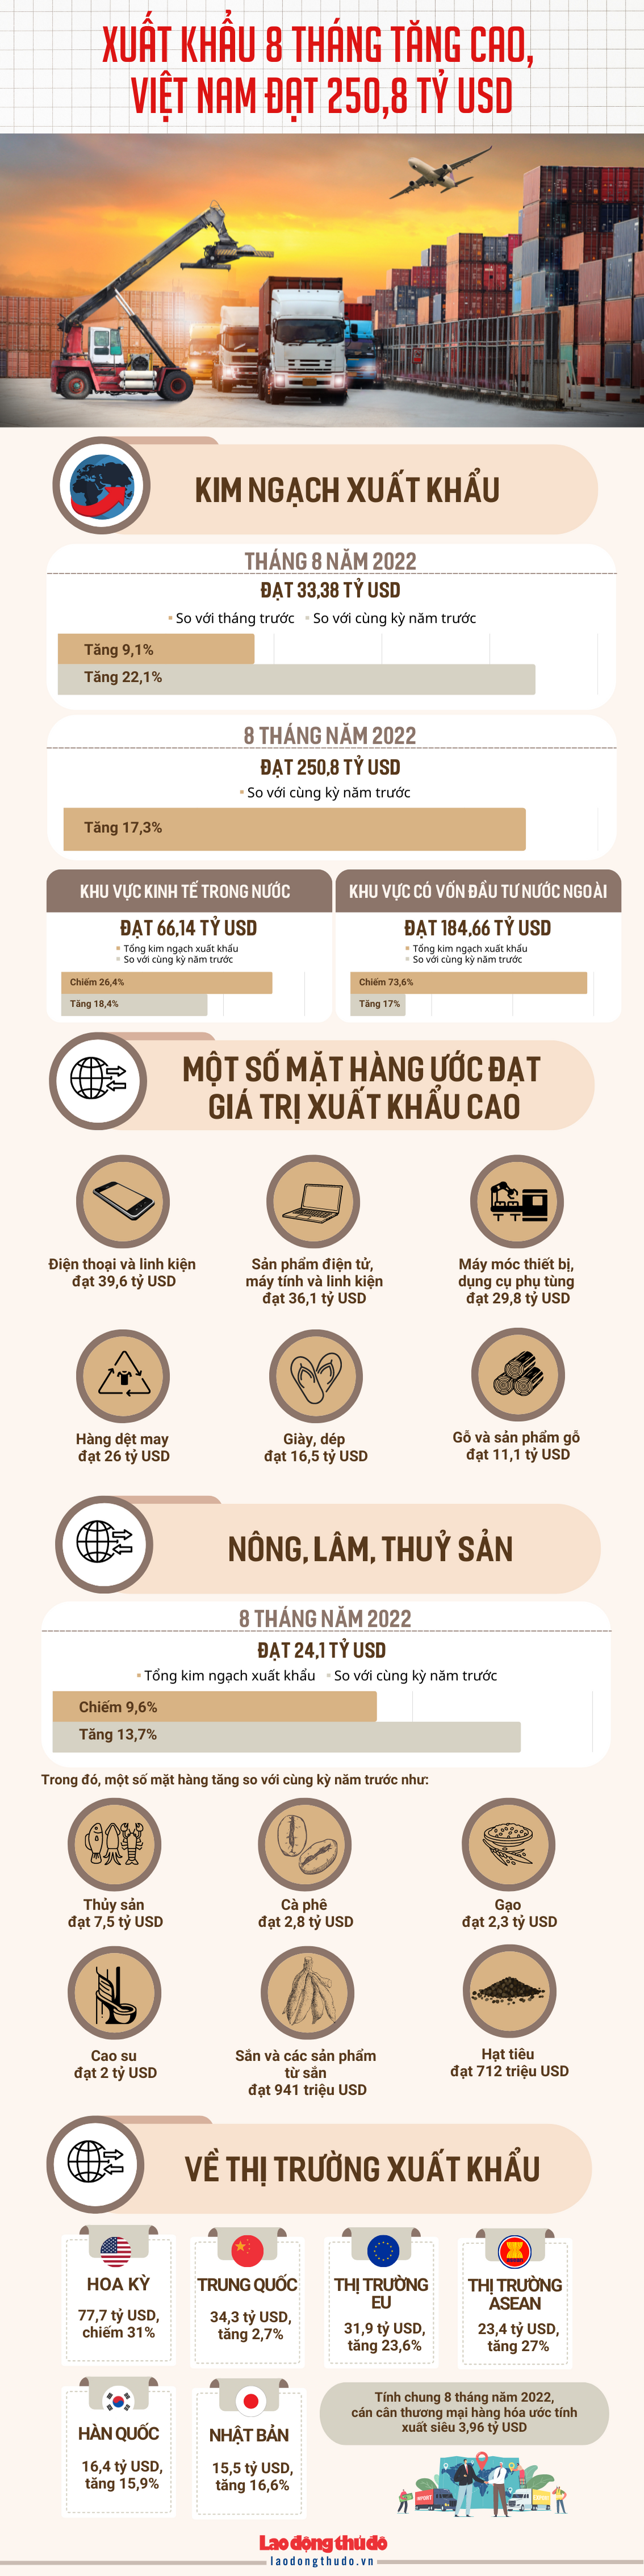 [Infographic] Xuất khẩu 8 tháng tăng cao, Việt Nam xuất siêu 3,96 tỷ USD